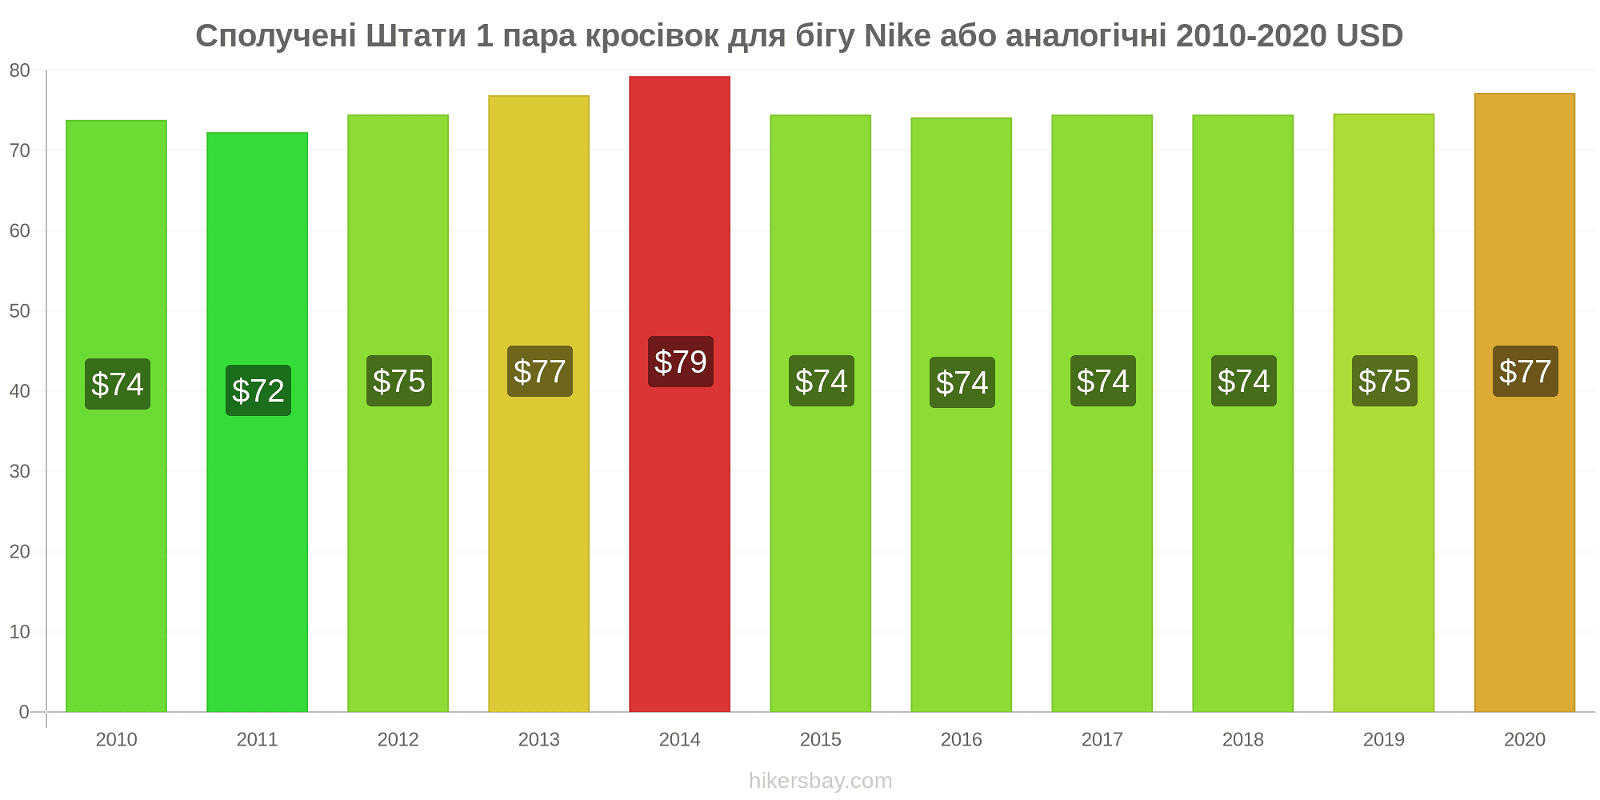 Сполучені Штати зміни цін 1 пара кросівок для бігу Nike або аналогічні hikersbay.com